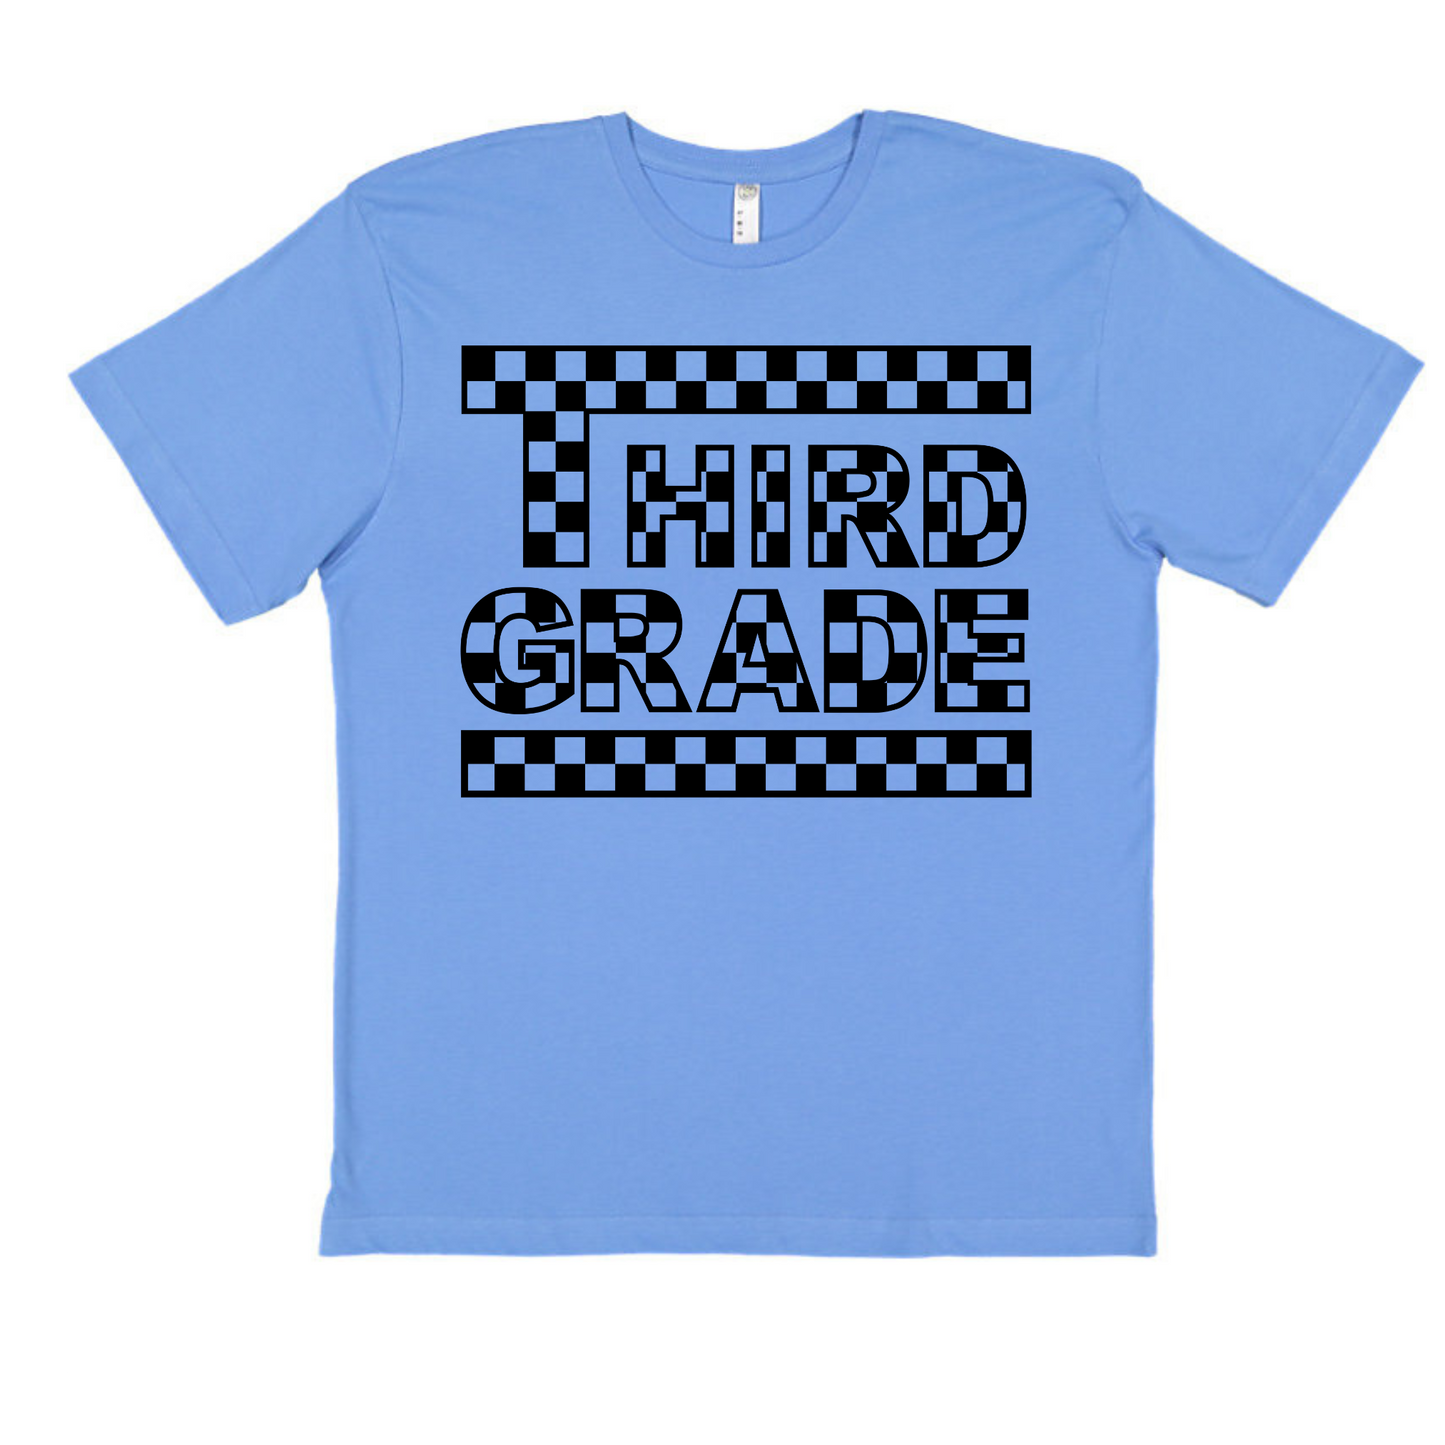 Checkered 3rd Grade